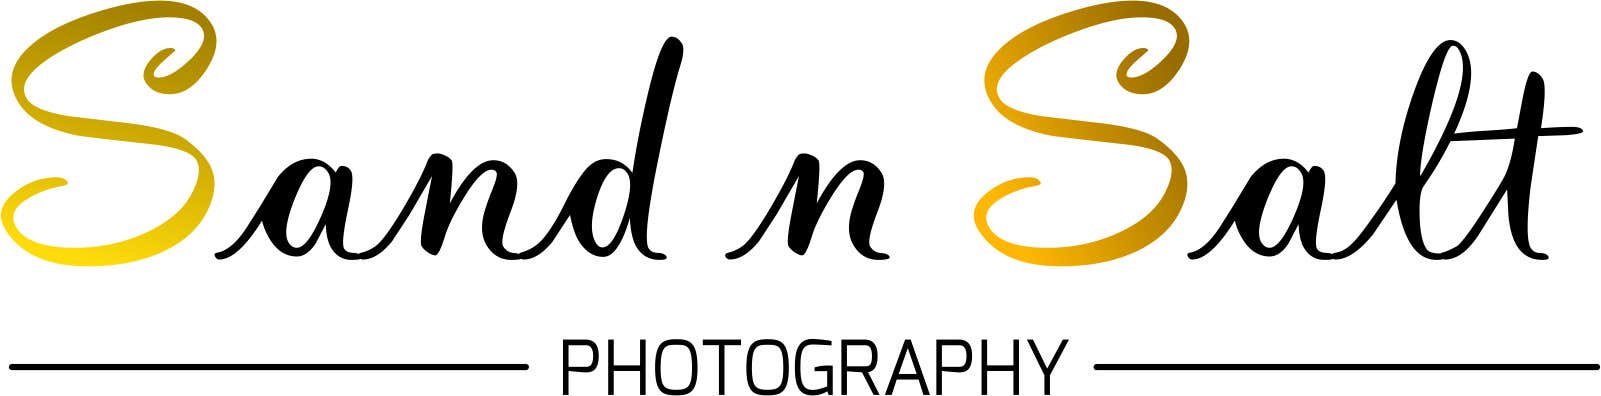 Inscrição nº 104 do Concurso para                                                 Design a Logo for Photography Business/Brand
                                            